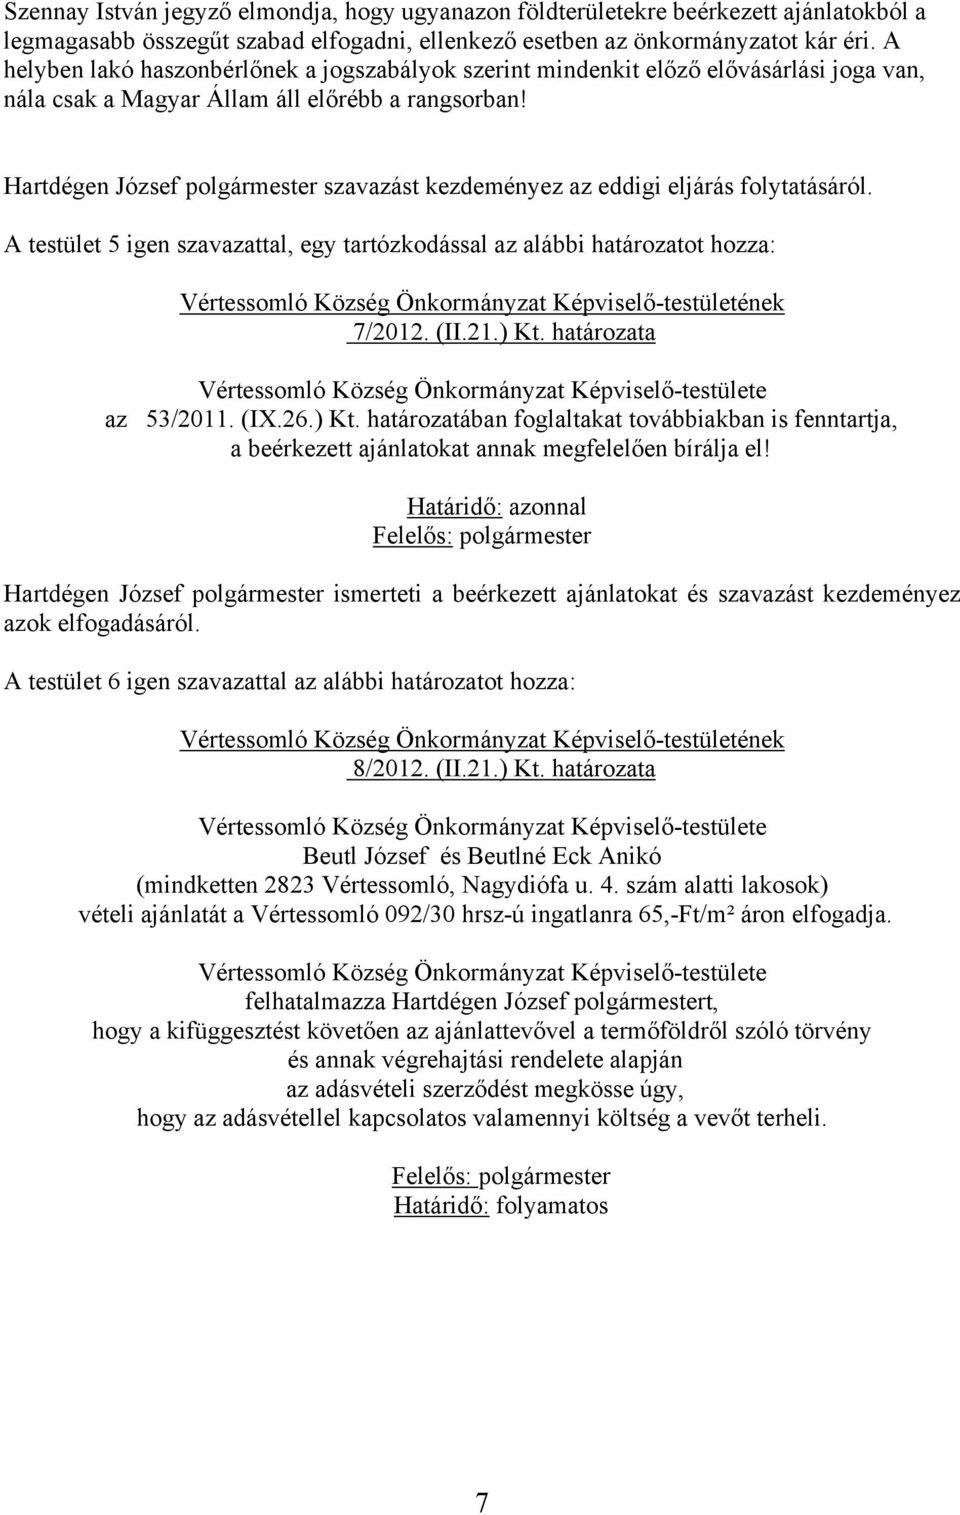 Hartdégen József polgármester szavazást kezdeményez az eddigi eljárás folytatásáról. A testület 5 igen szavazattal, egy tartózkodással az alábbi határozatot hozza: 7/2012. (II.21.) Kt.